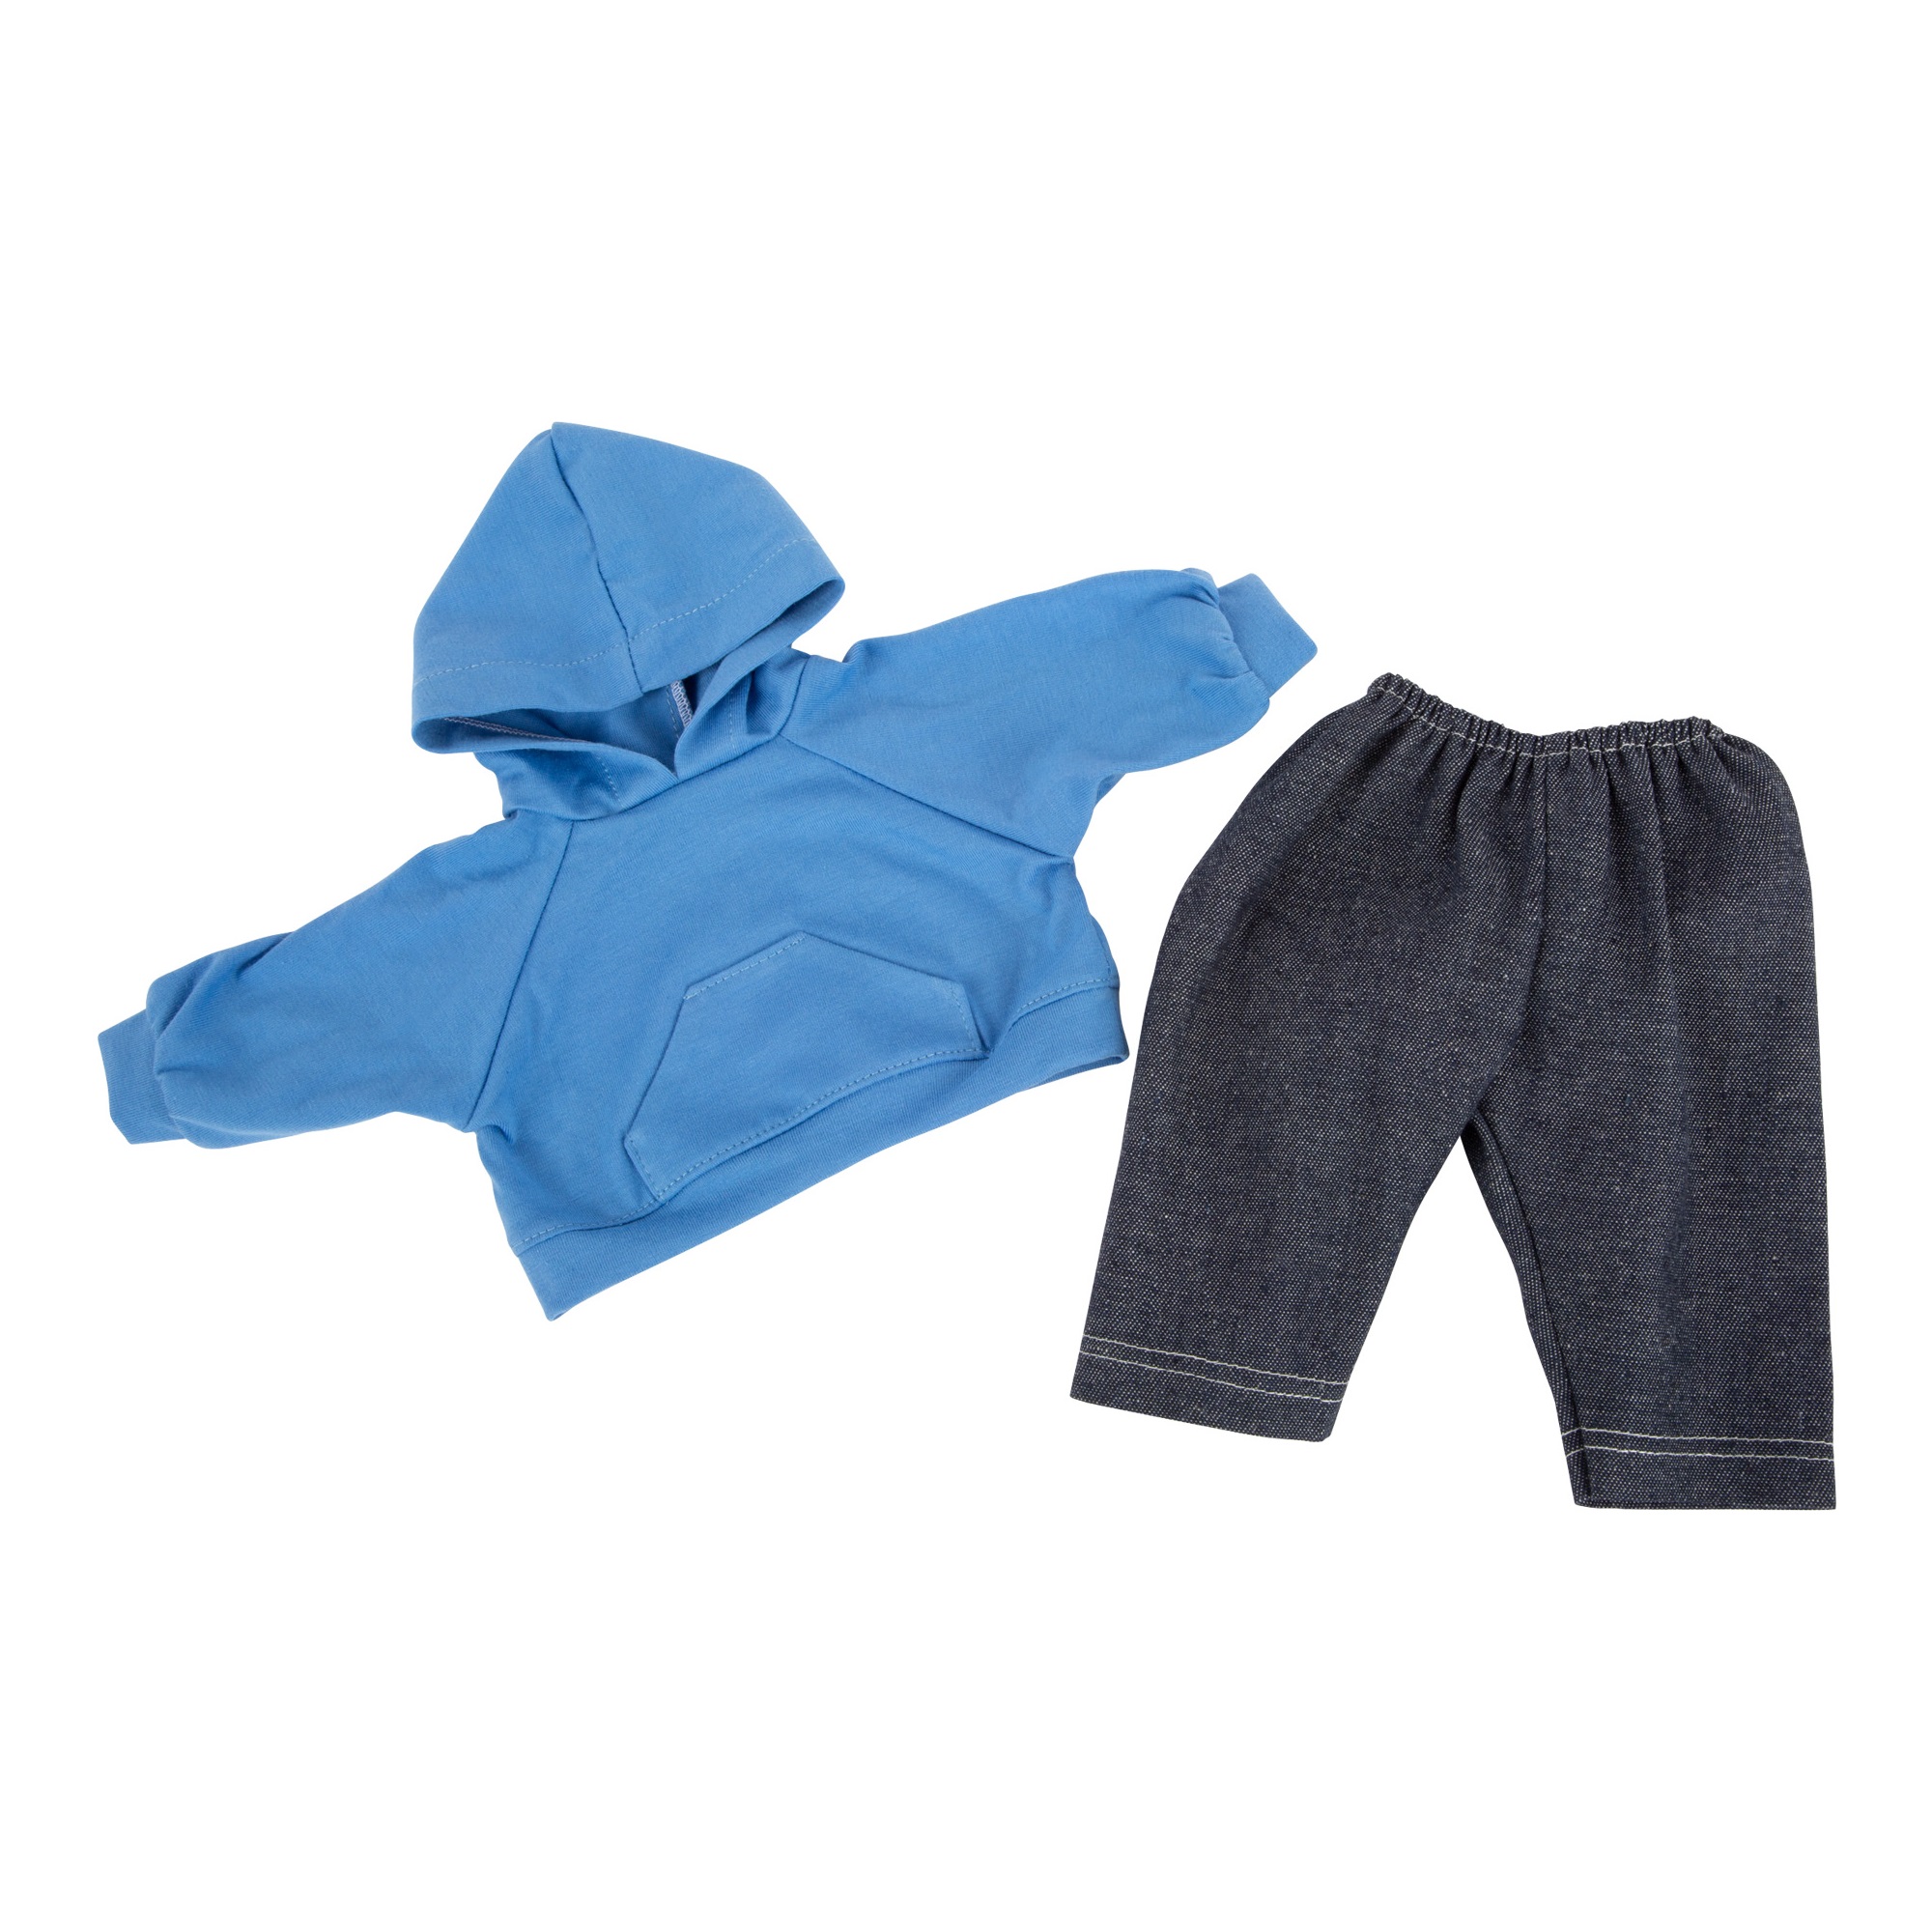 Puppenkleidung Kapuzenpullover und Hose - Kleider für Bäbi / Puppen: Kapuzenpulli (Sweater) und Jeans